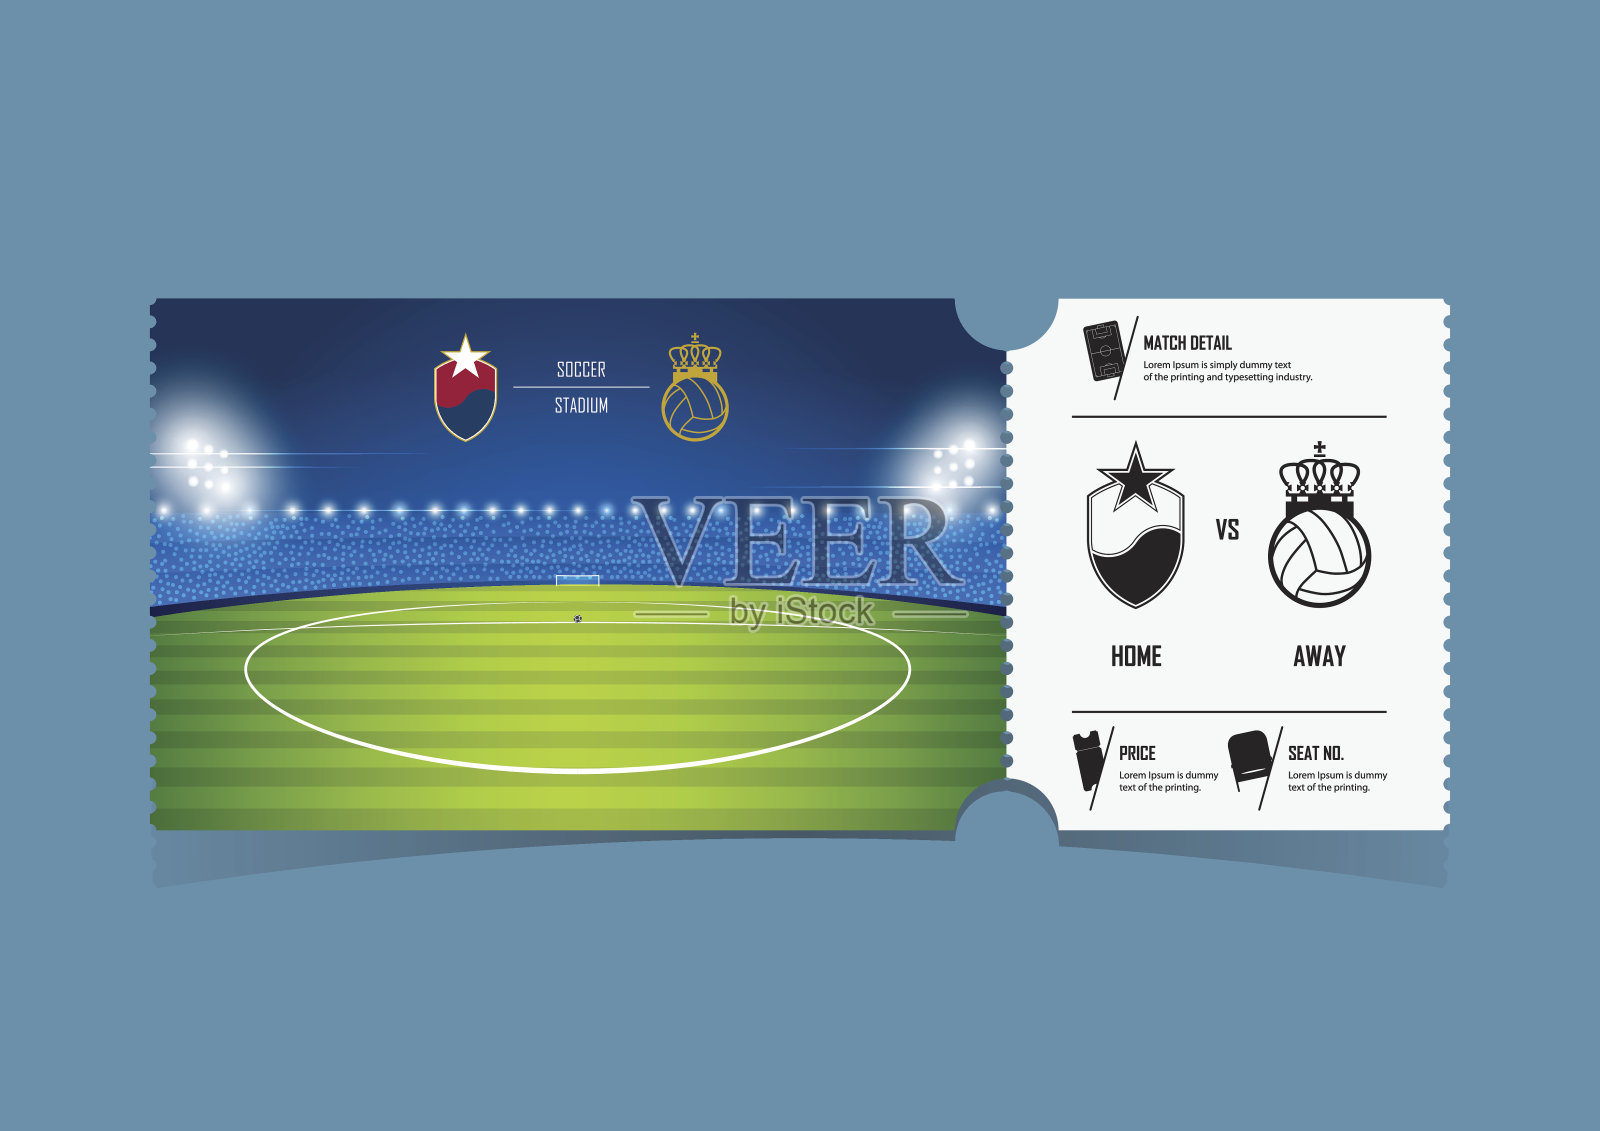 足球或足球比赛的门票模板设计。礼品券或奖券。向量。设计模板素材